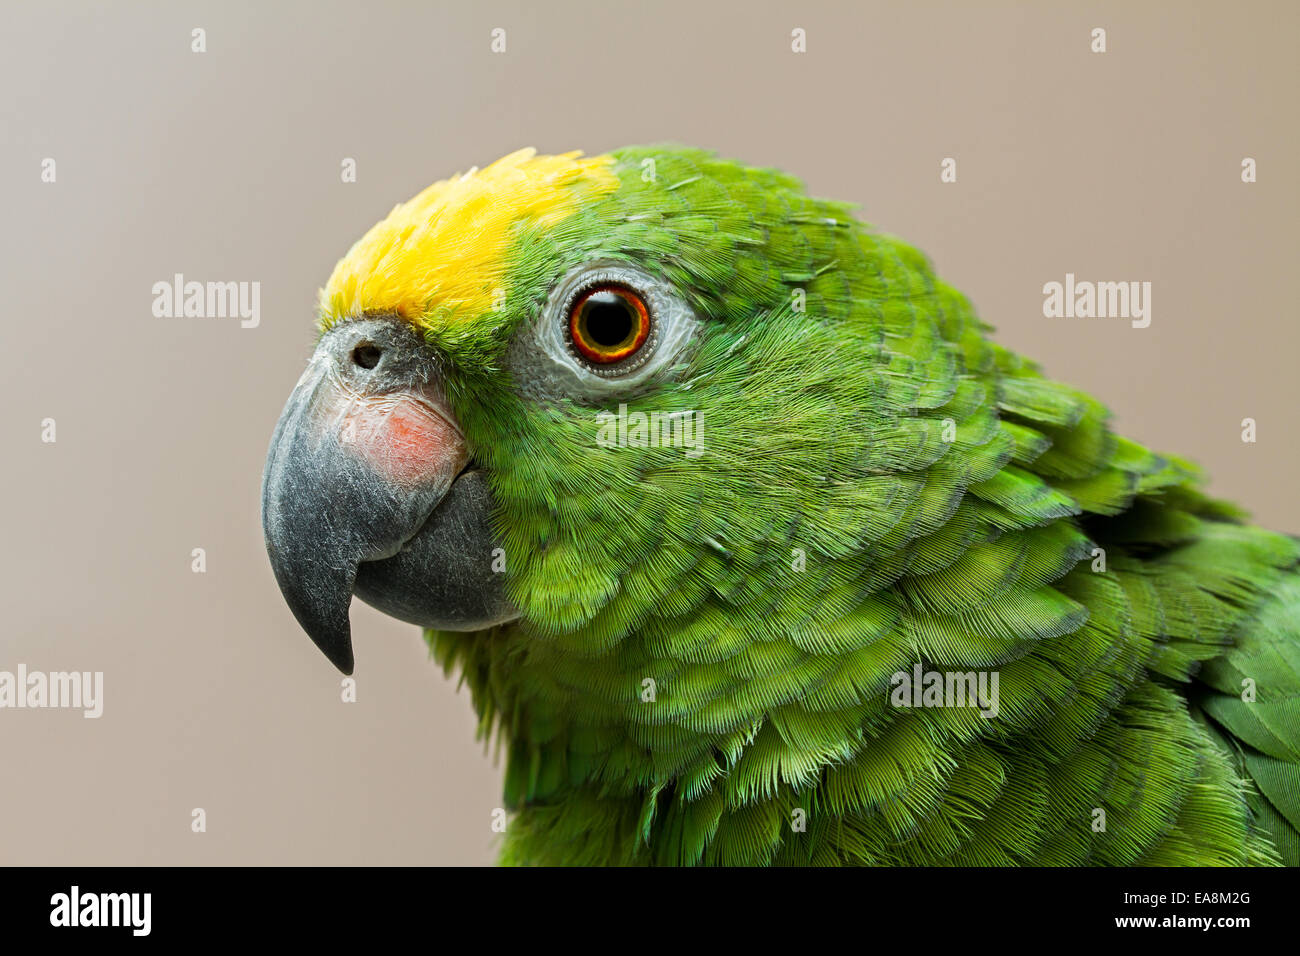 Kopf geschossen von einem gelben gekrönt Amazon Papagei mit einem grünen  Kopf mit einem gelben Fleck an der Spitze Stockfotografie - Alamy